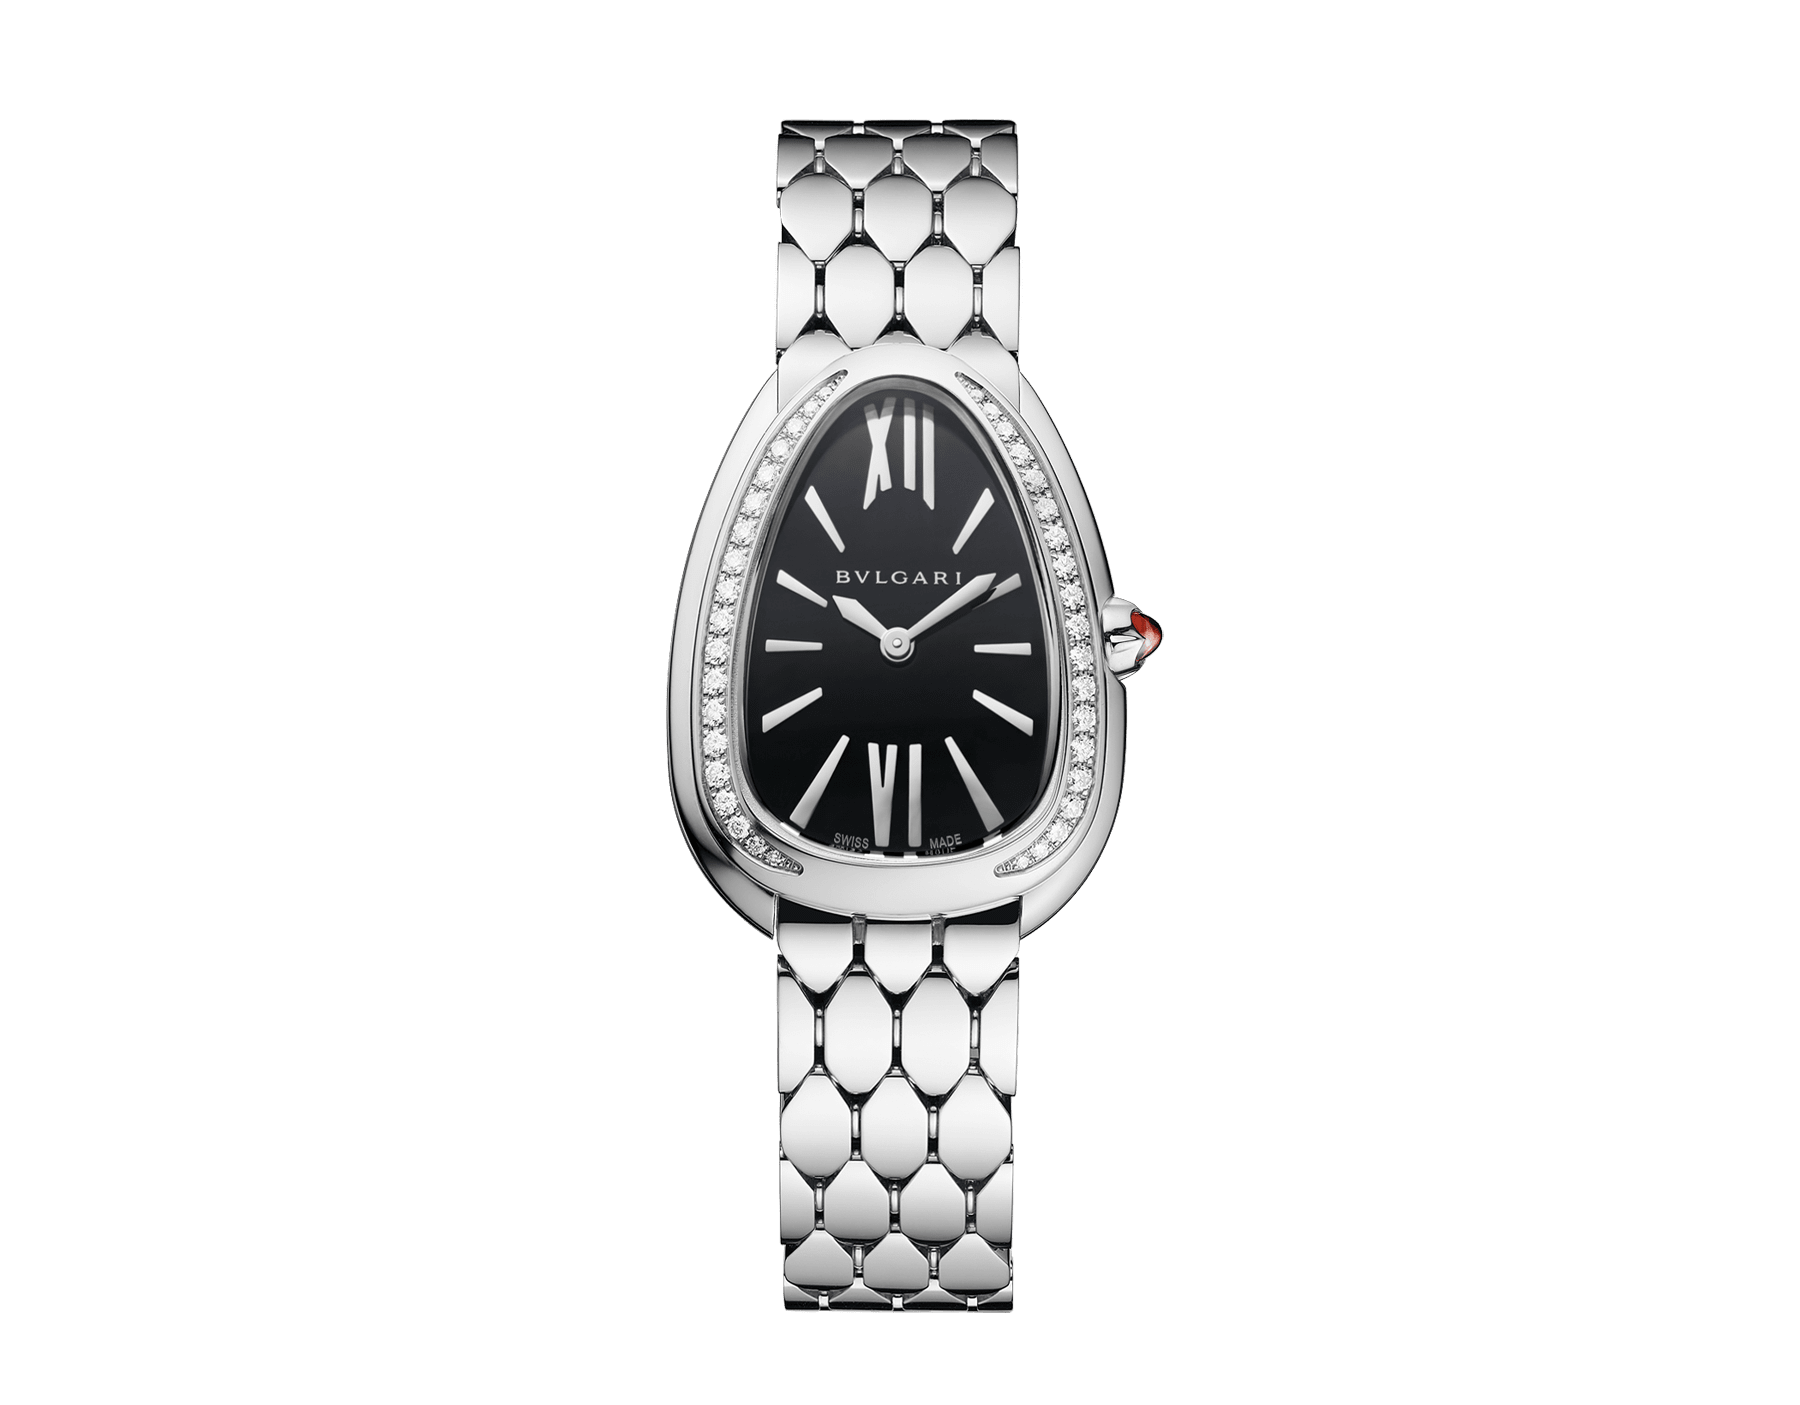 Serpenti Seduttori Uhr mit Gehäuse aus Edelstahl mit Diamanten, schwarz lackiertem Zifferblatt und Armband aus Edelstahl. Wasserdicht bis 30 Meter. 103449 image 1